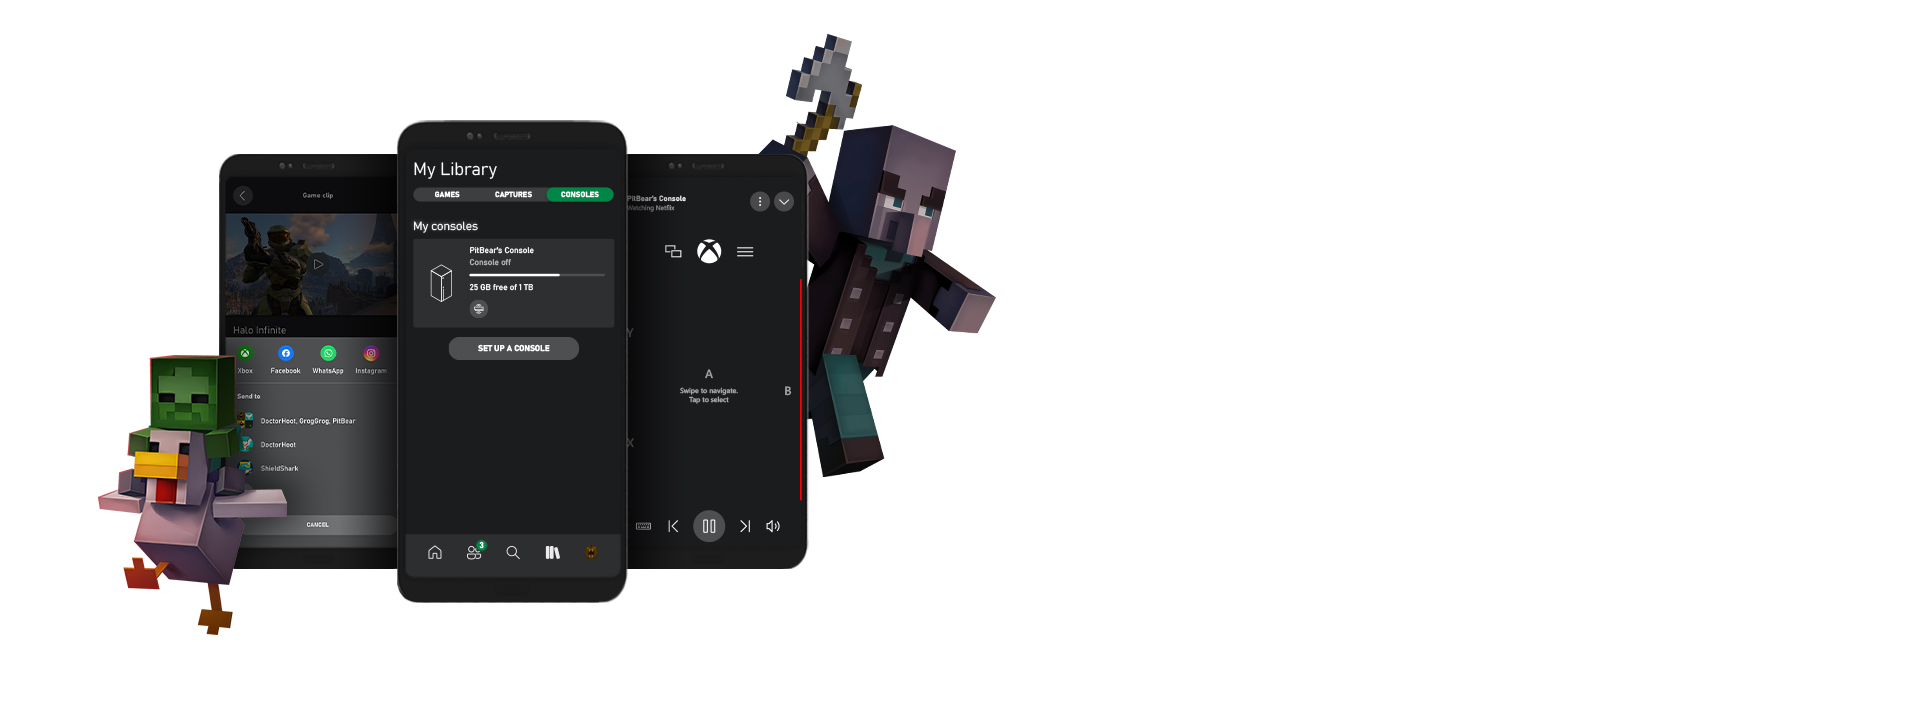 Χαρακτήρες του Minecraft γύρω από διάφορα στιγμιότυπα οθόνης του περιβάλλοντος εργασίας χρήστη της εφαρμογής Xbox για κινητές συσκευές.